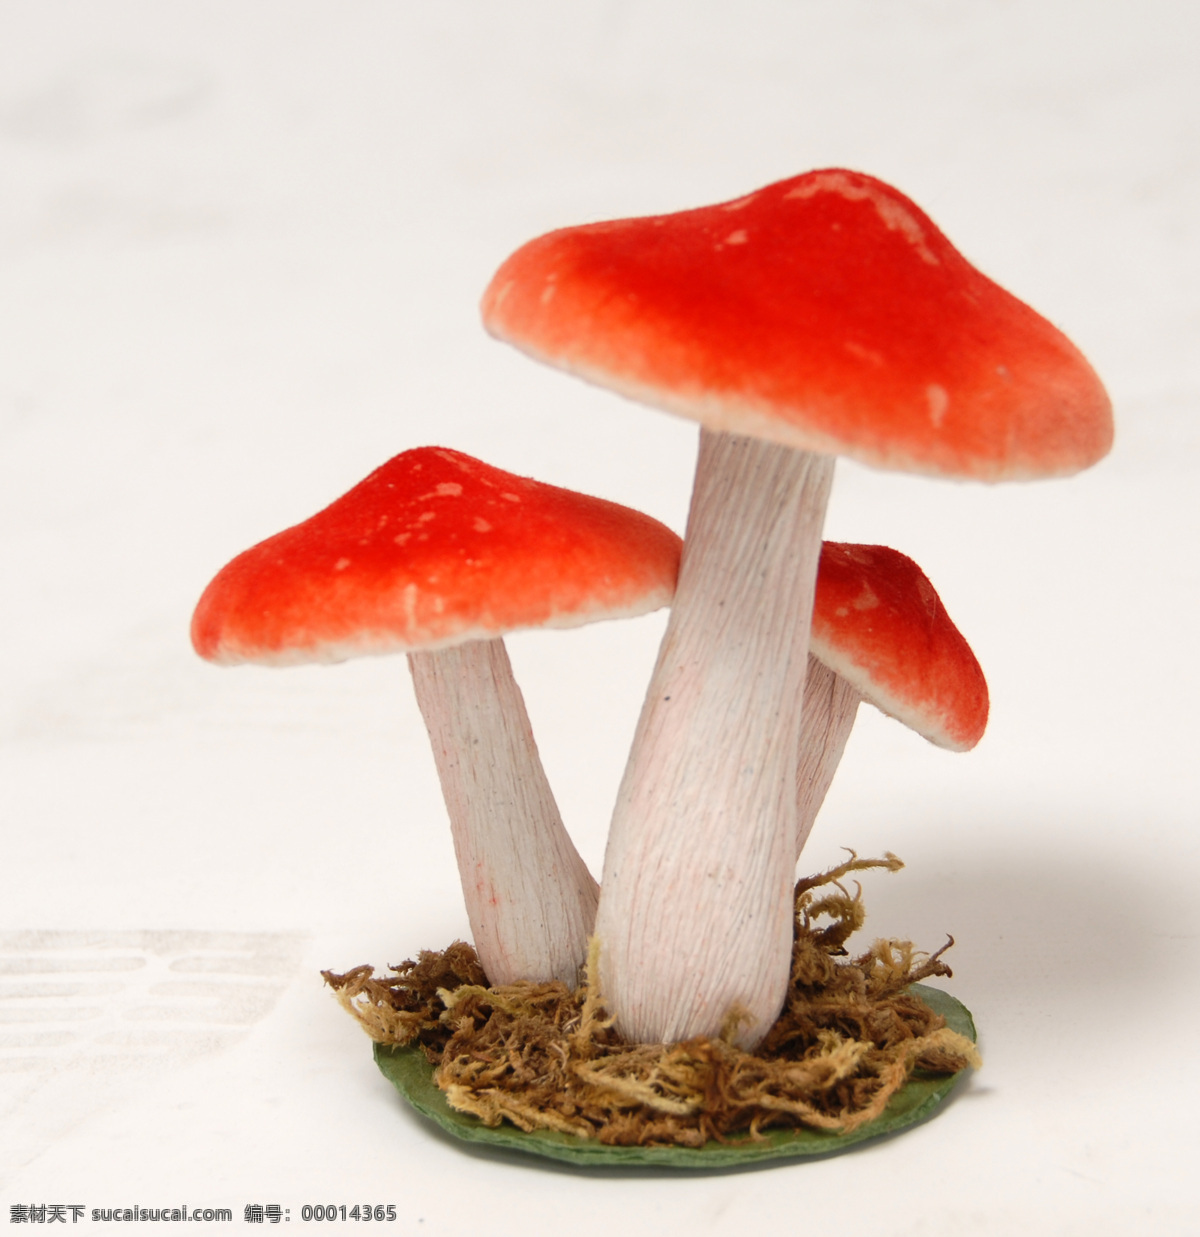 红色 蘑菇 摄影图片 摄影素材 漂亮的蘑菇 红色的蘑菇 高清蘑菇图片 设计素材 花草 生物世界